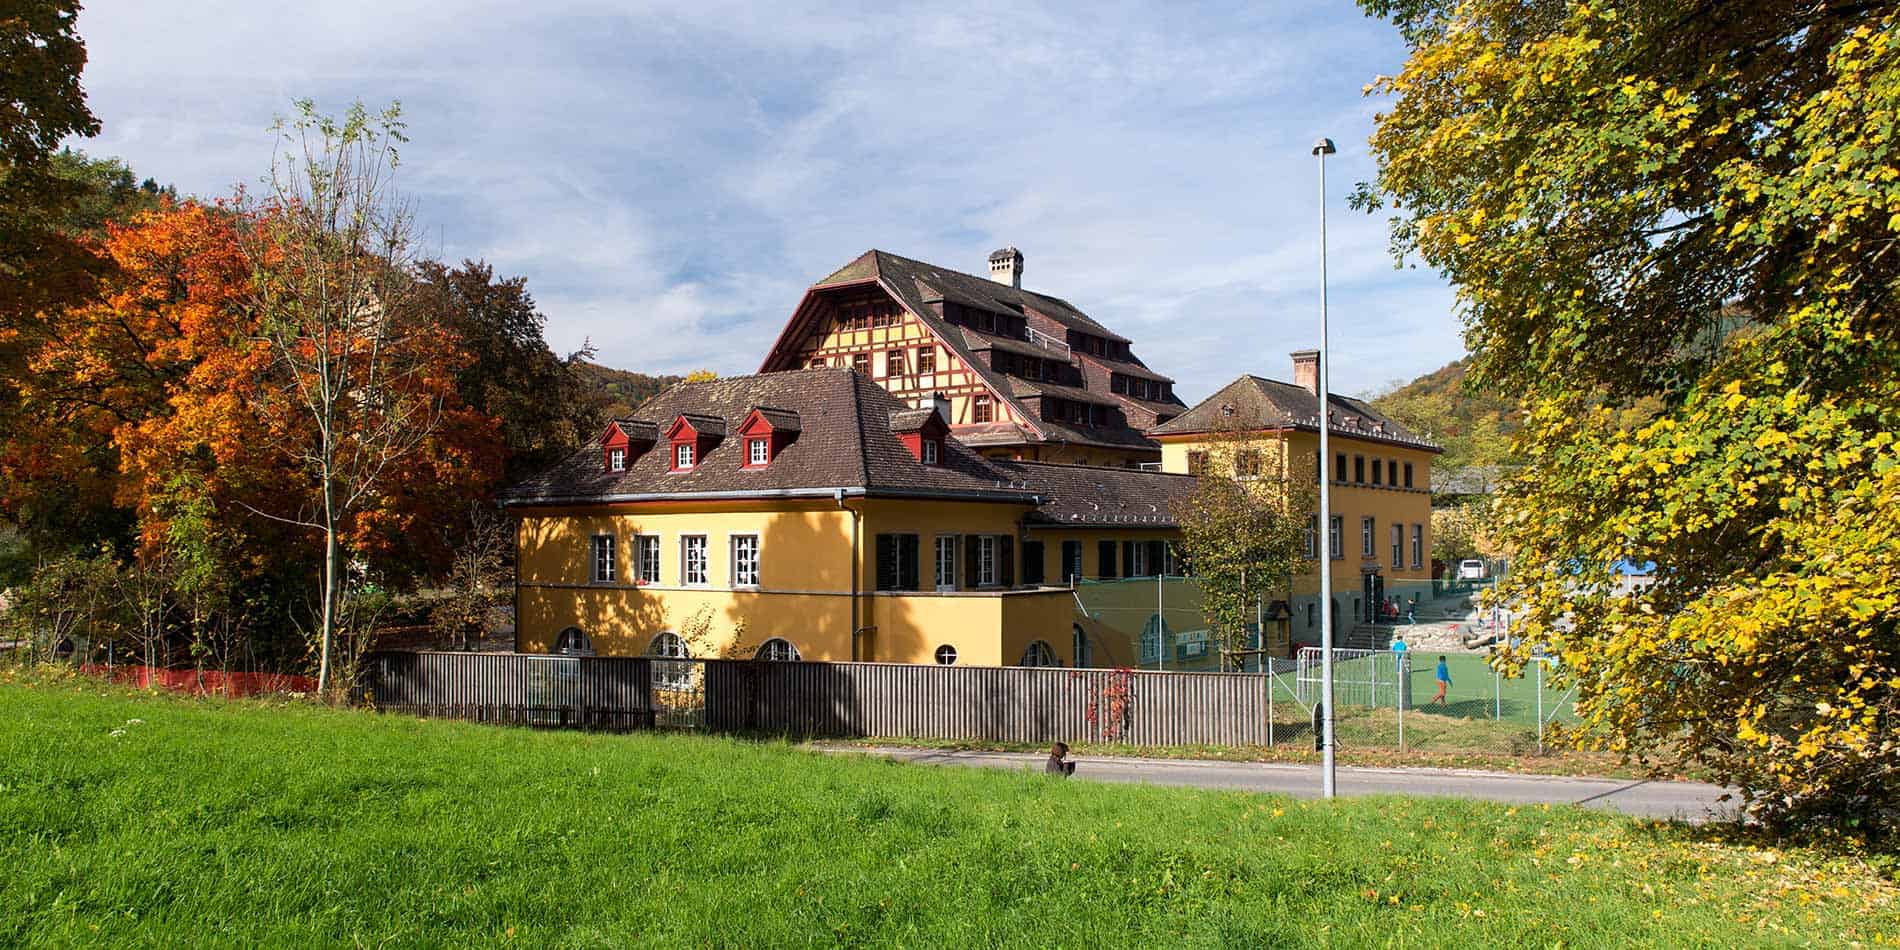 ISSH International School of Schaffhausen